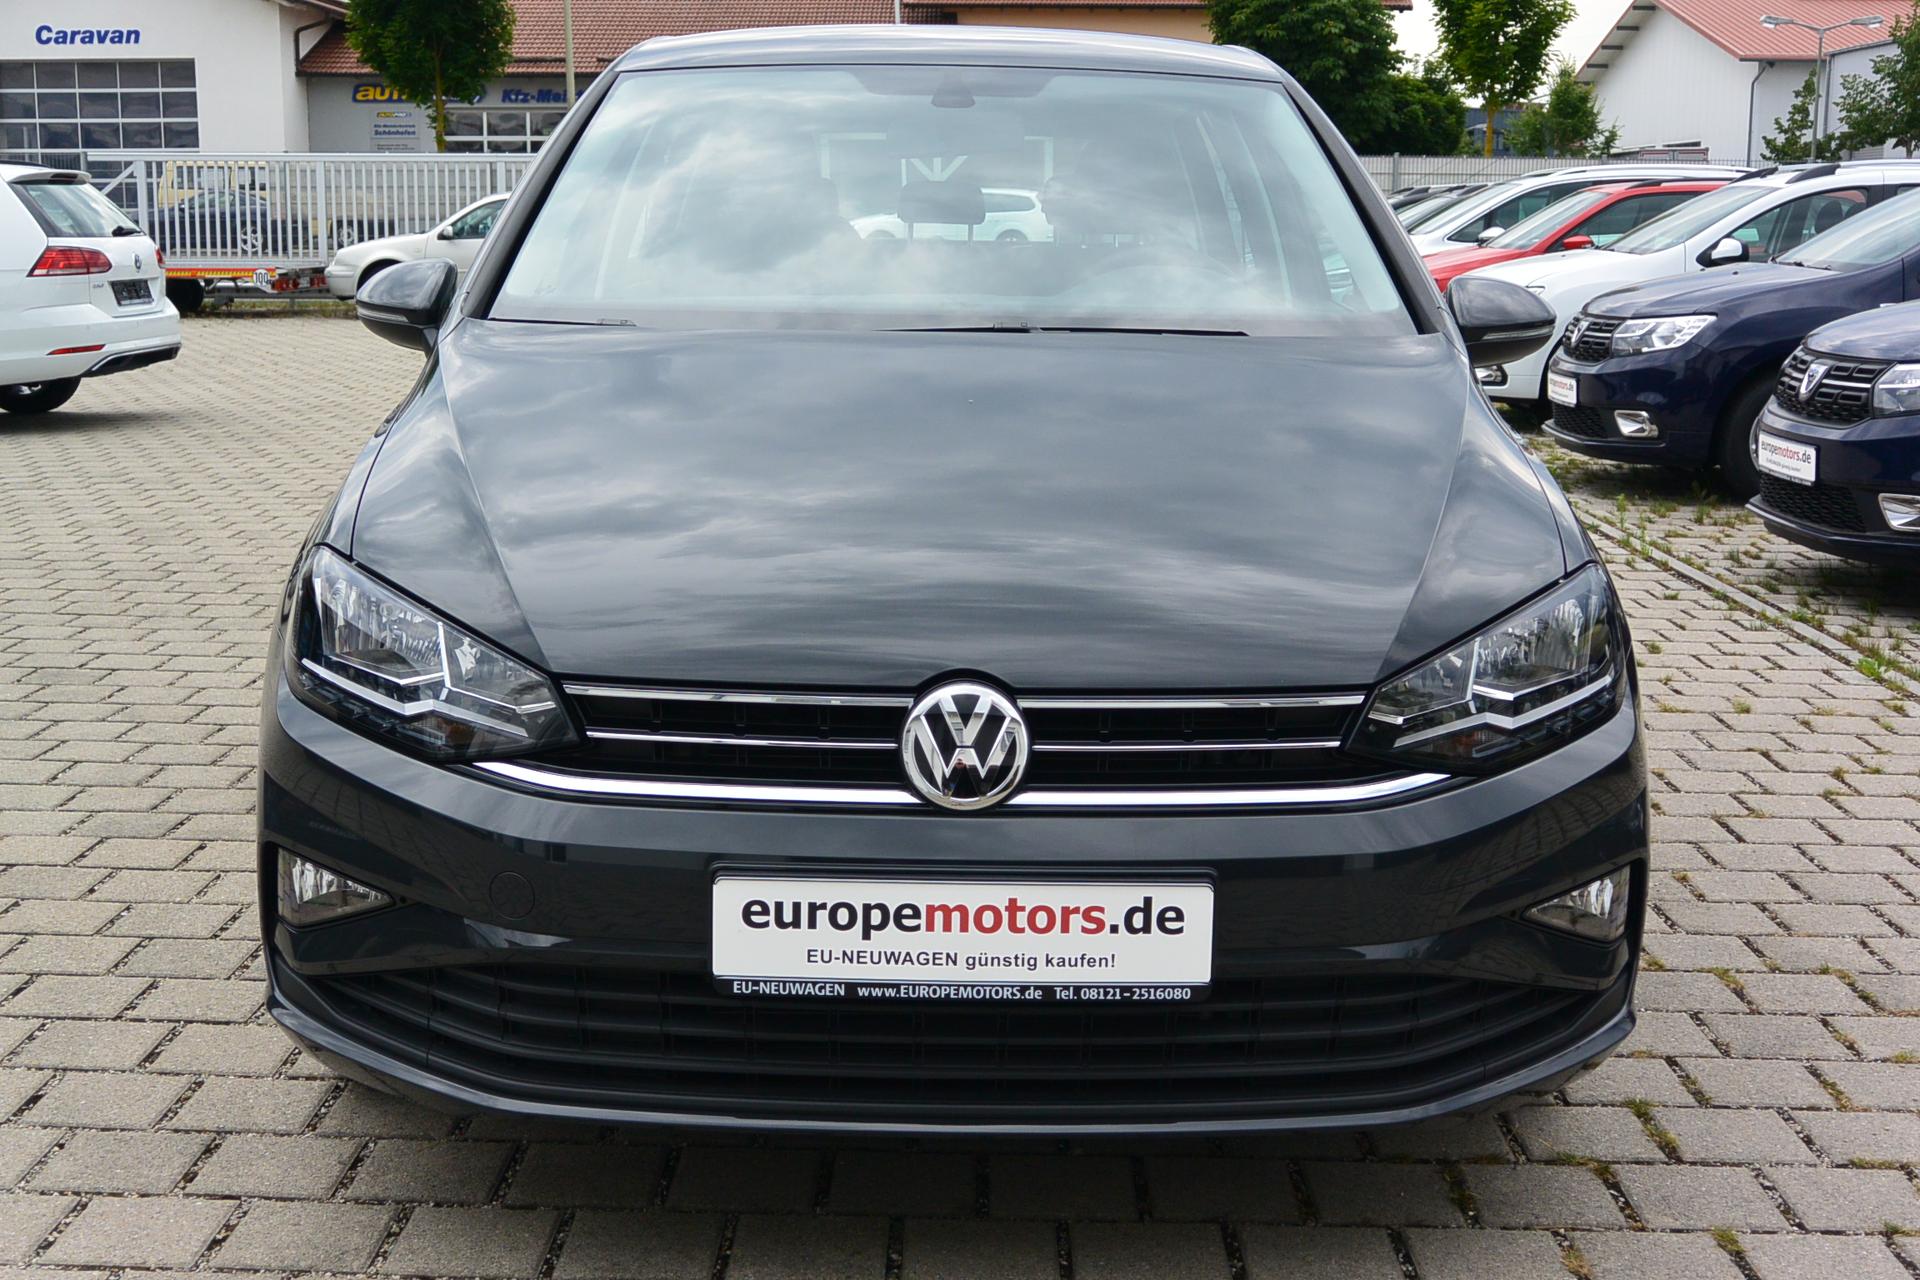 VW Golf Sportsvan Reimport EU-Neuwagen